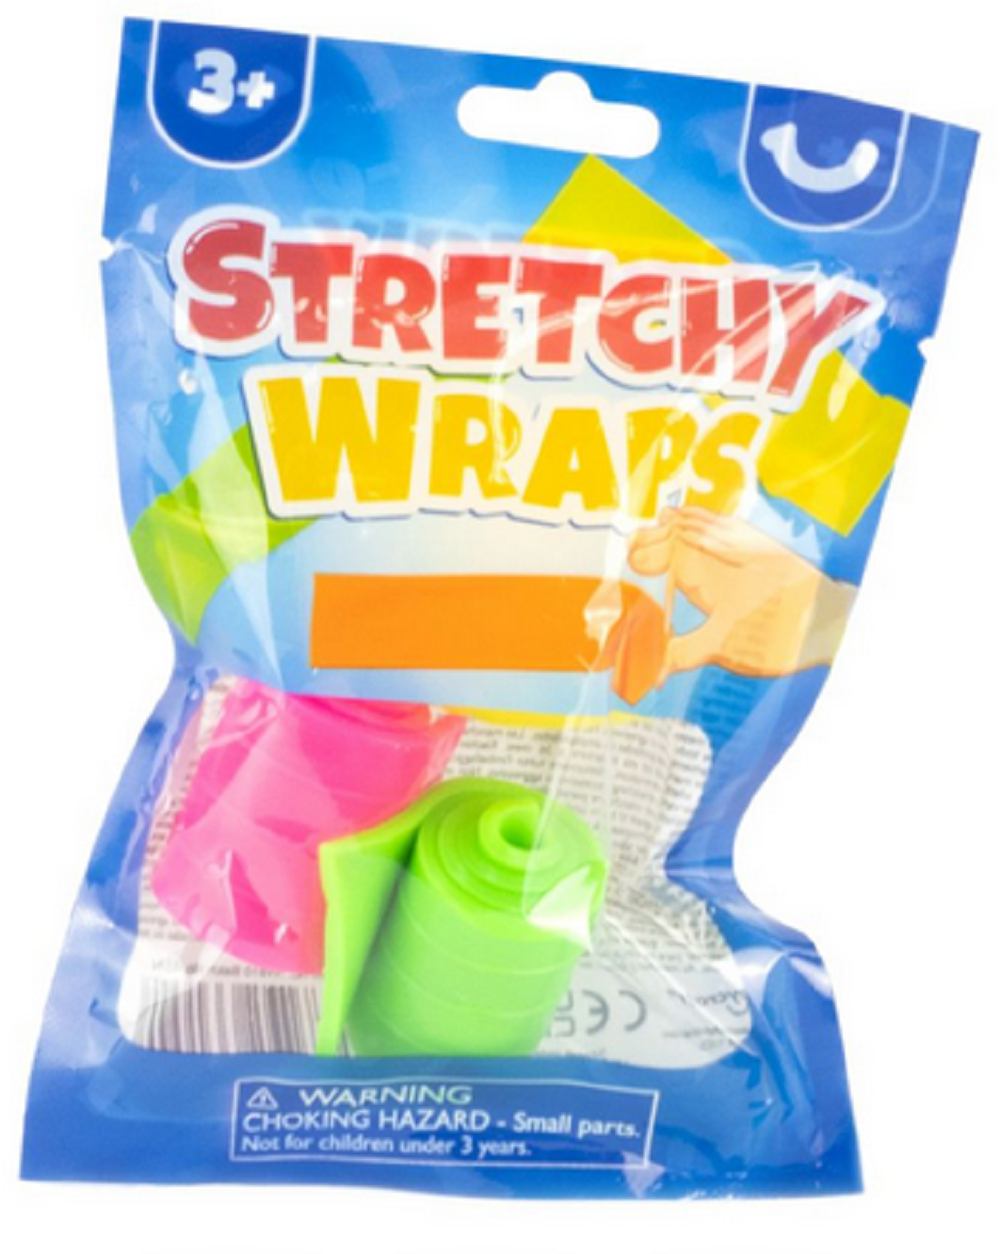 Keycraft Stretchy Wraps